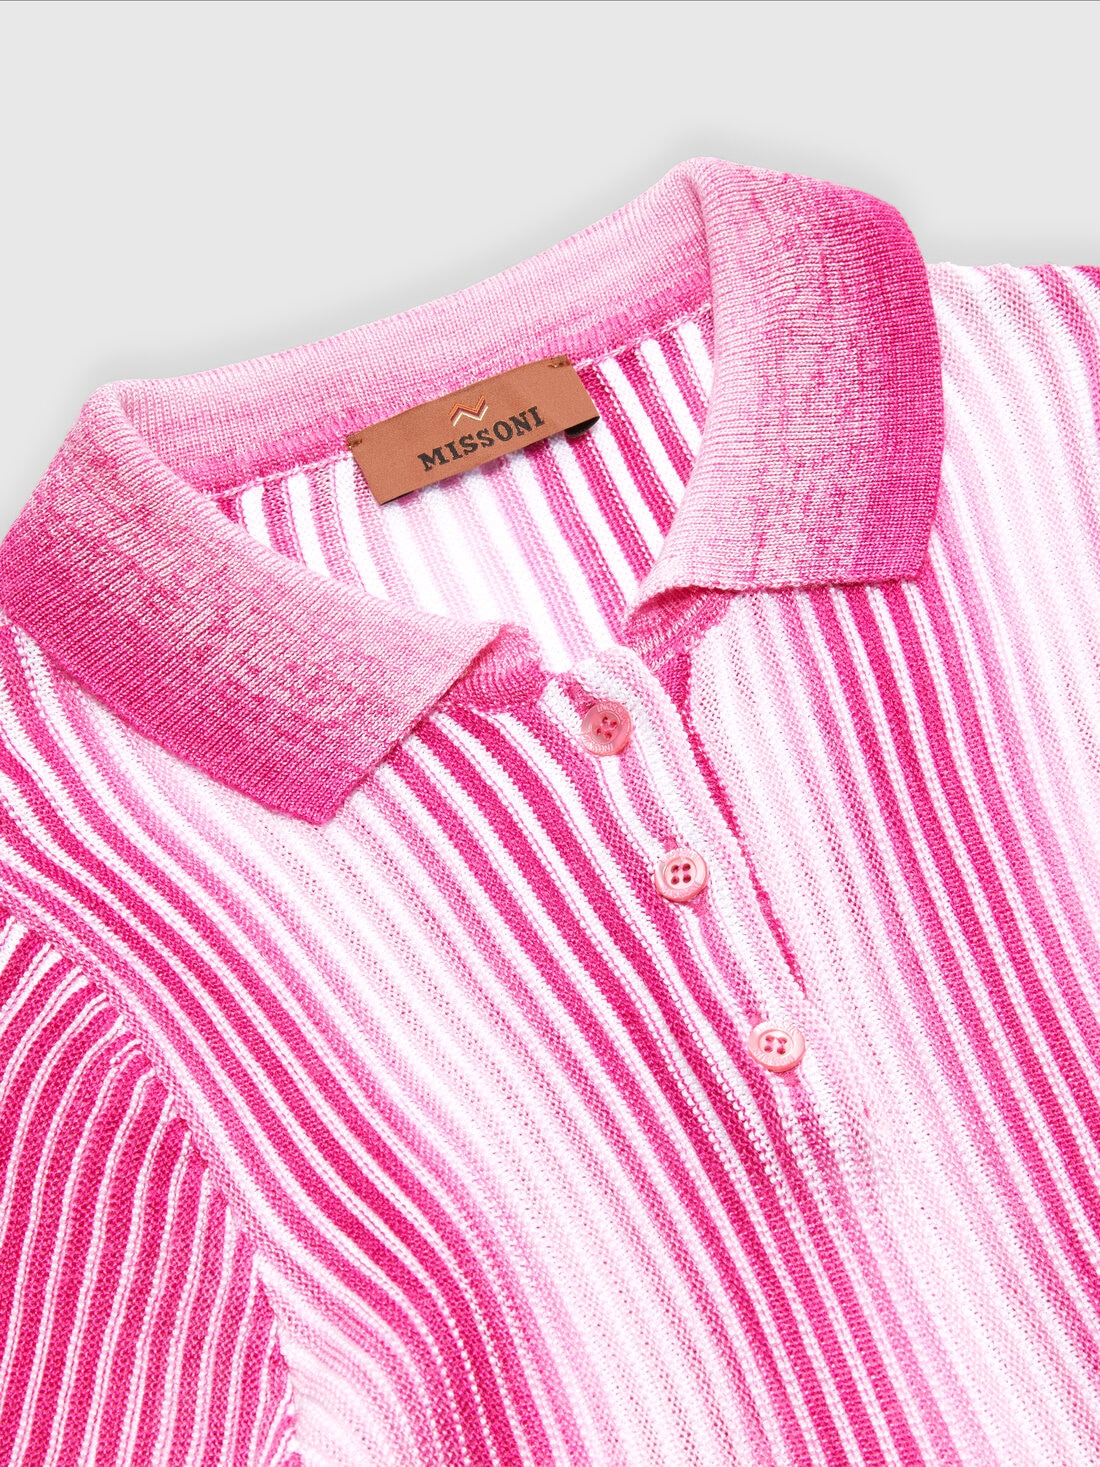 Midi dress in striped viscose knit, Pink   - KS24SG01BV00FVS30DI - 2